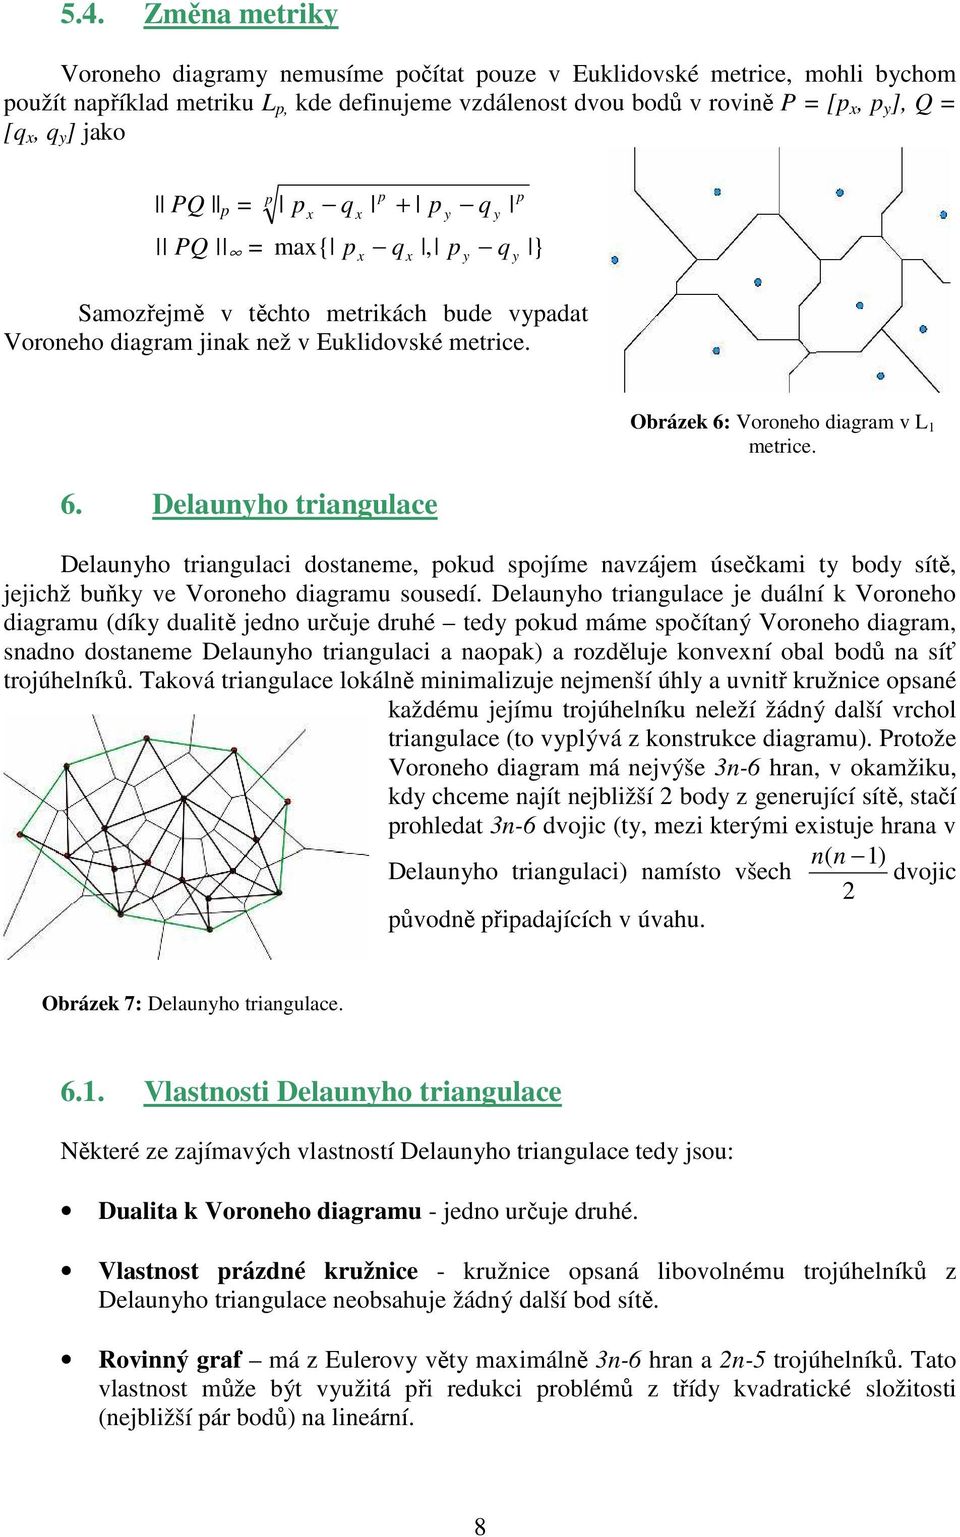 Delaunyho triangulace Obrázek 6: Voroneho diagram v L 1 metrice. Delaunyho triangulaci dostaneme, pokud spojíme navzájem úsečkami ty body sítě, jejichž buňky ve Voroneho diagramu sousedí.